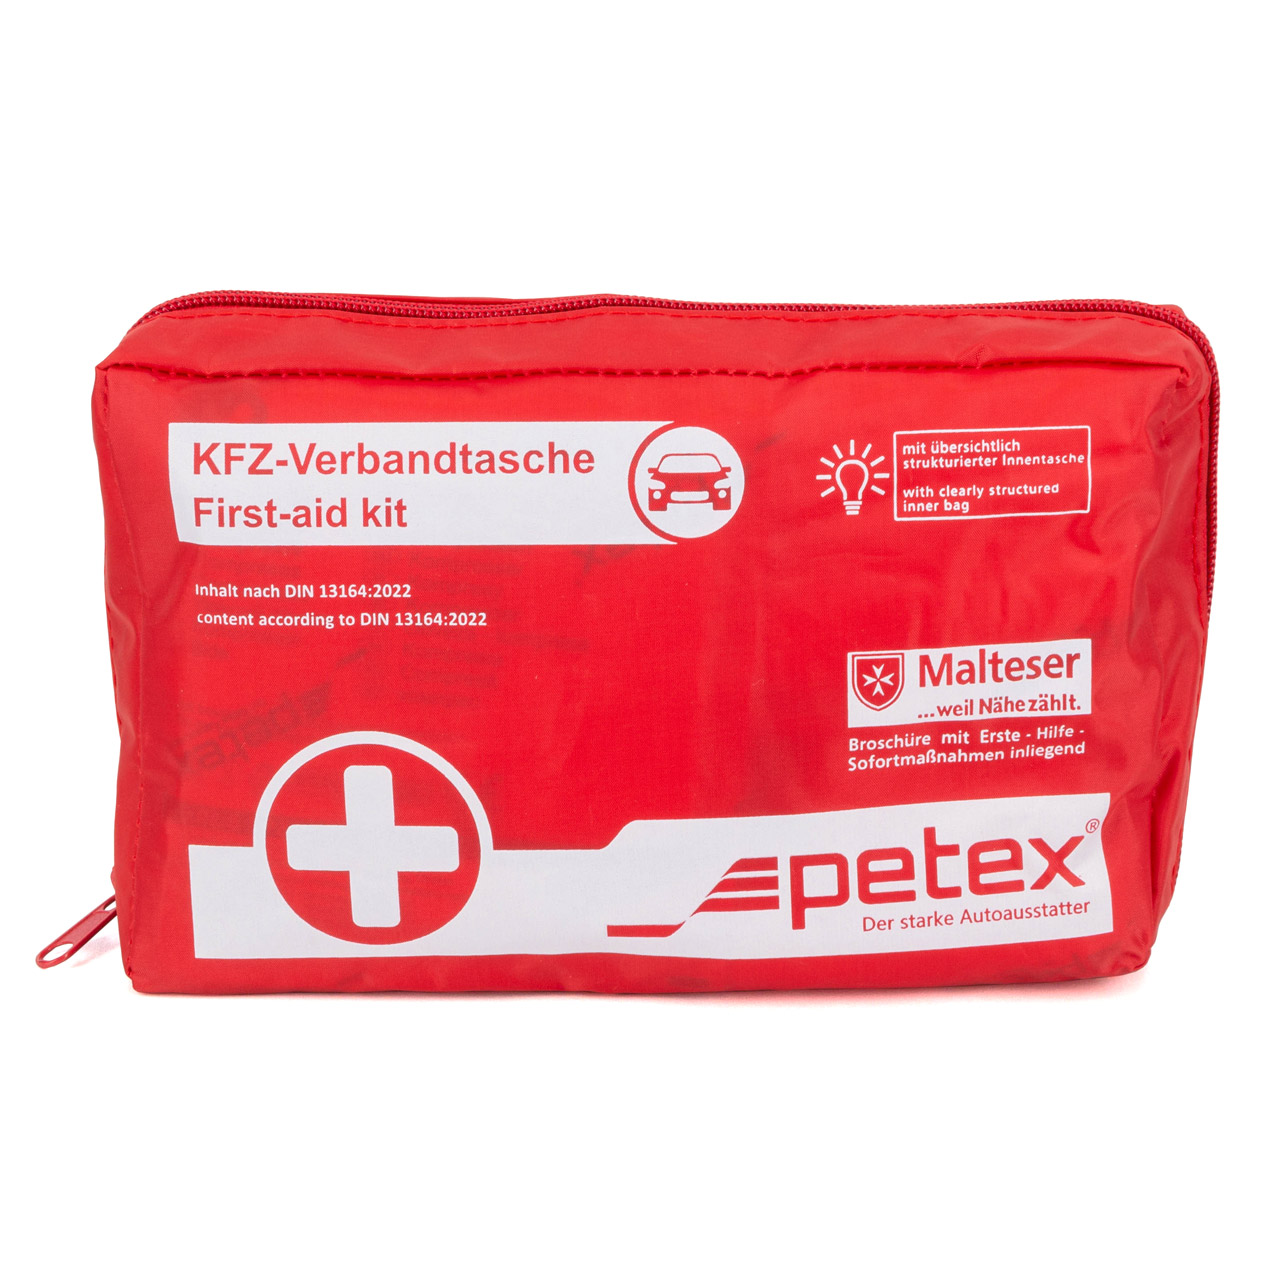 PETEX Auto PKW KFZ Verbandtasche Verbandkasten Erste-Hilfe ROT DIN13164-2022 (MHD 01.2028)